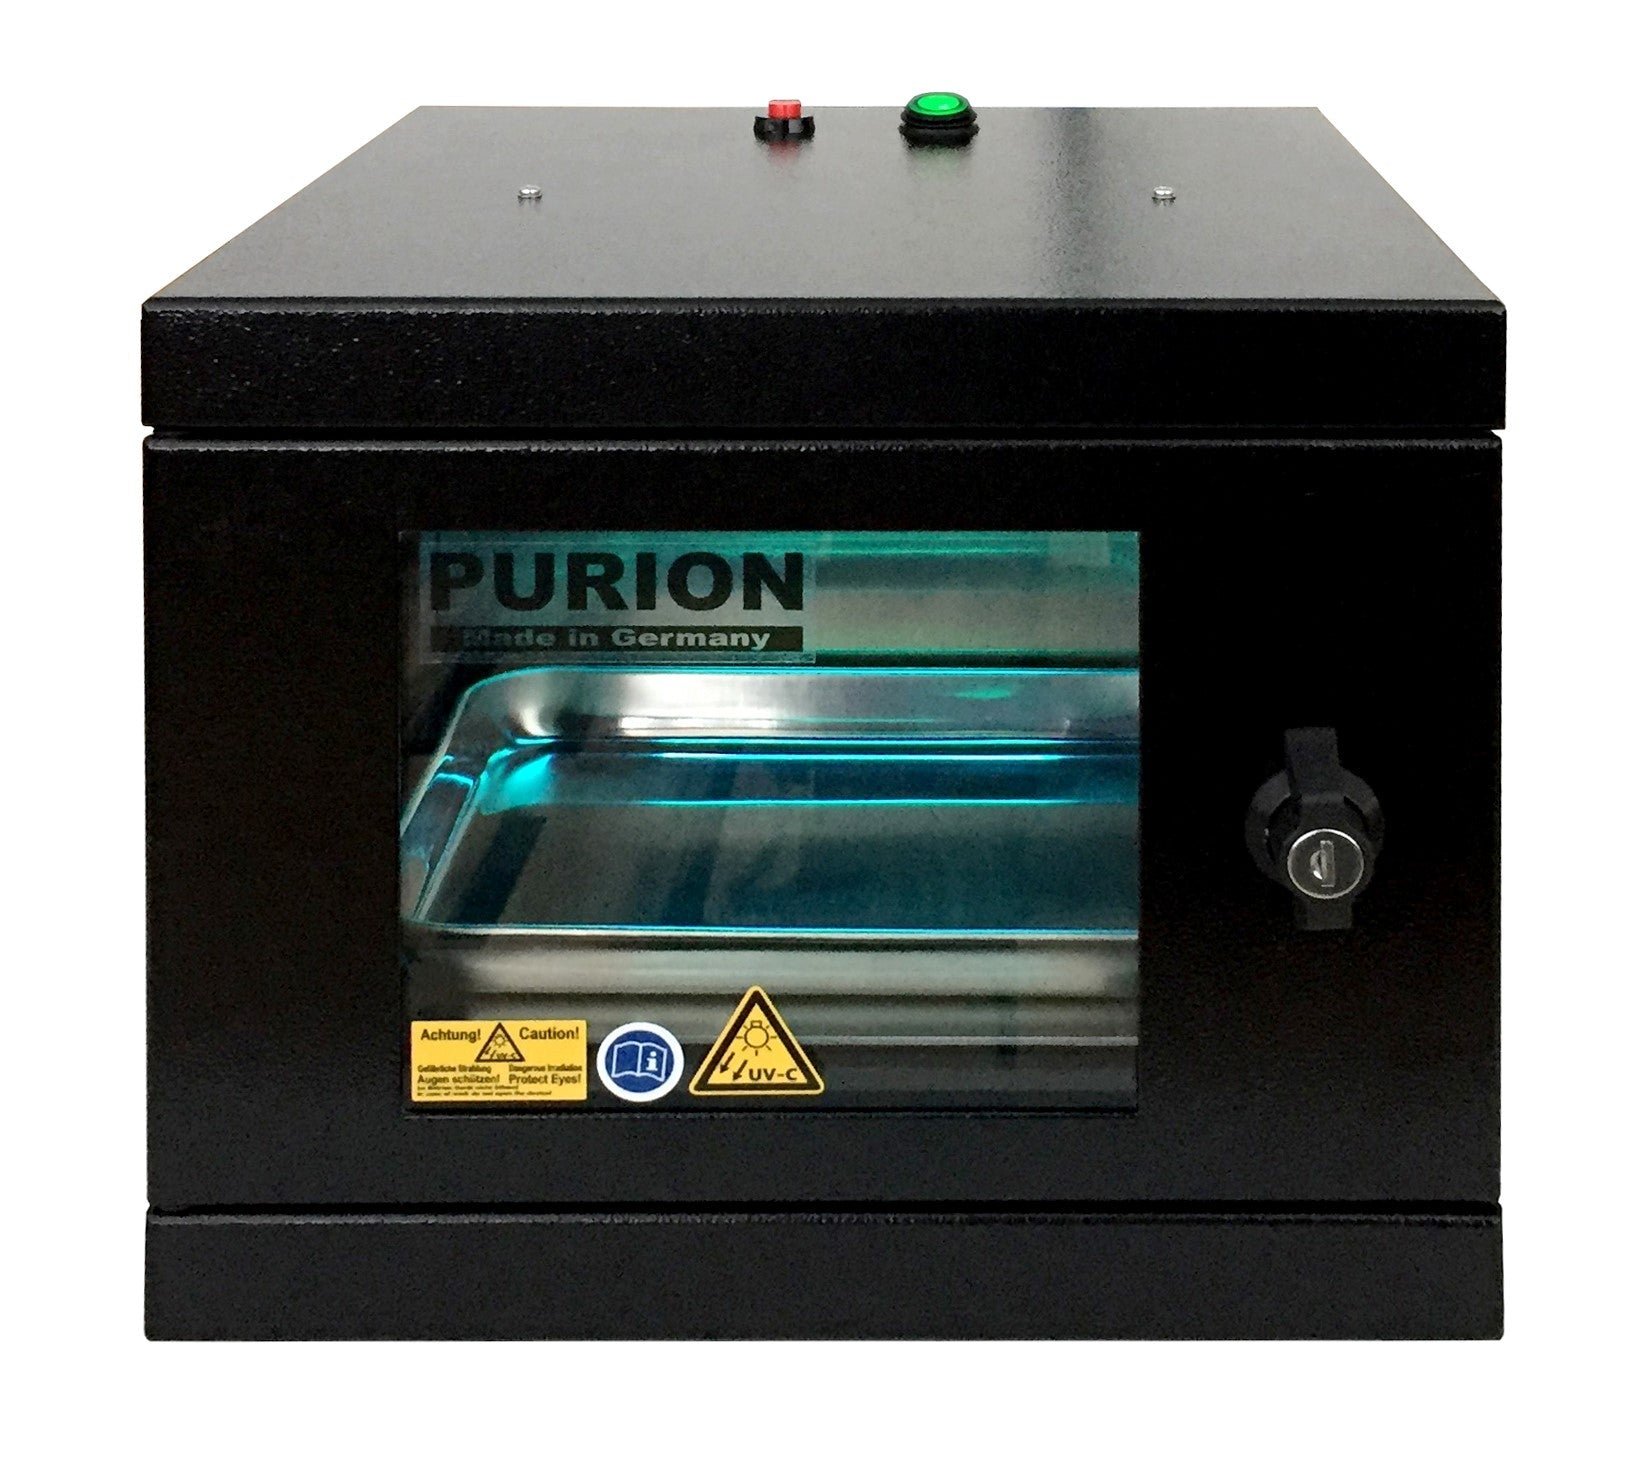 Die PURION UVC Box Small Extra der PURION GmbH sorgt mittels Ionentechnologie für Hygiene und Desinfektion gegen schädliche Krankheitserreger.